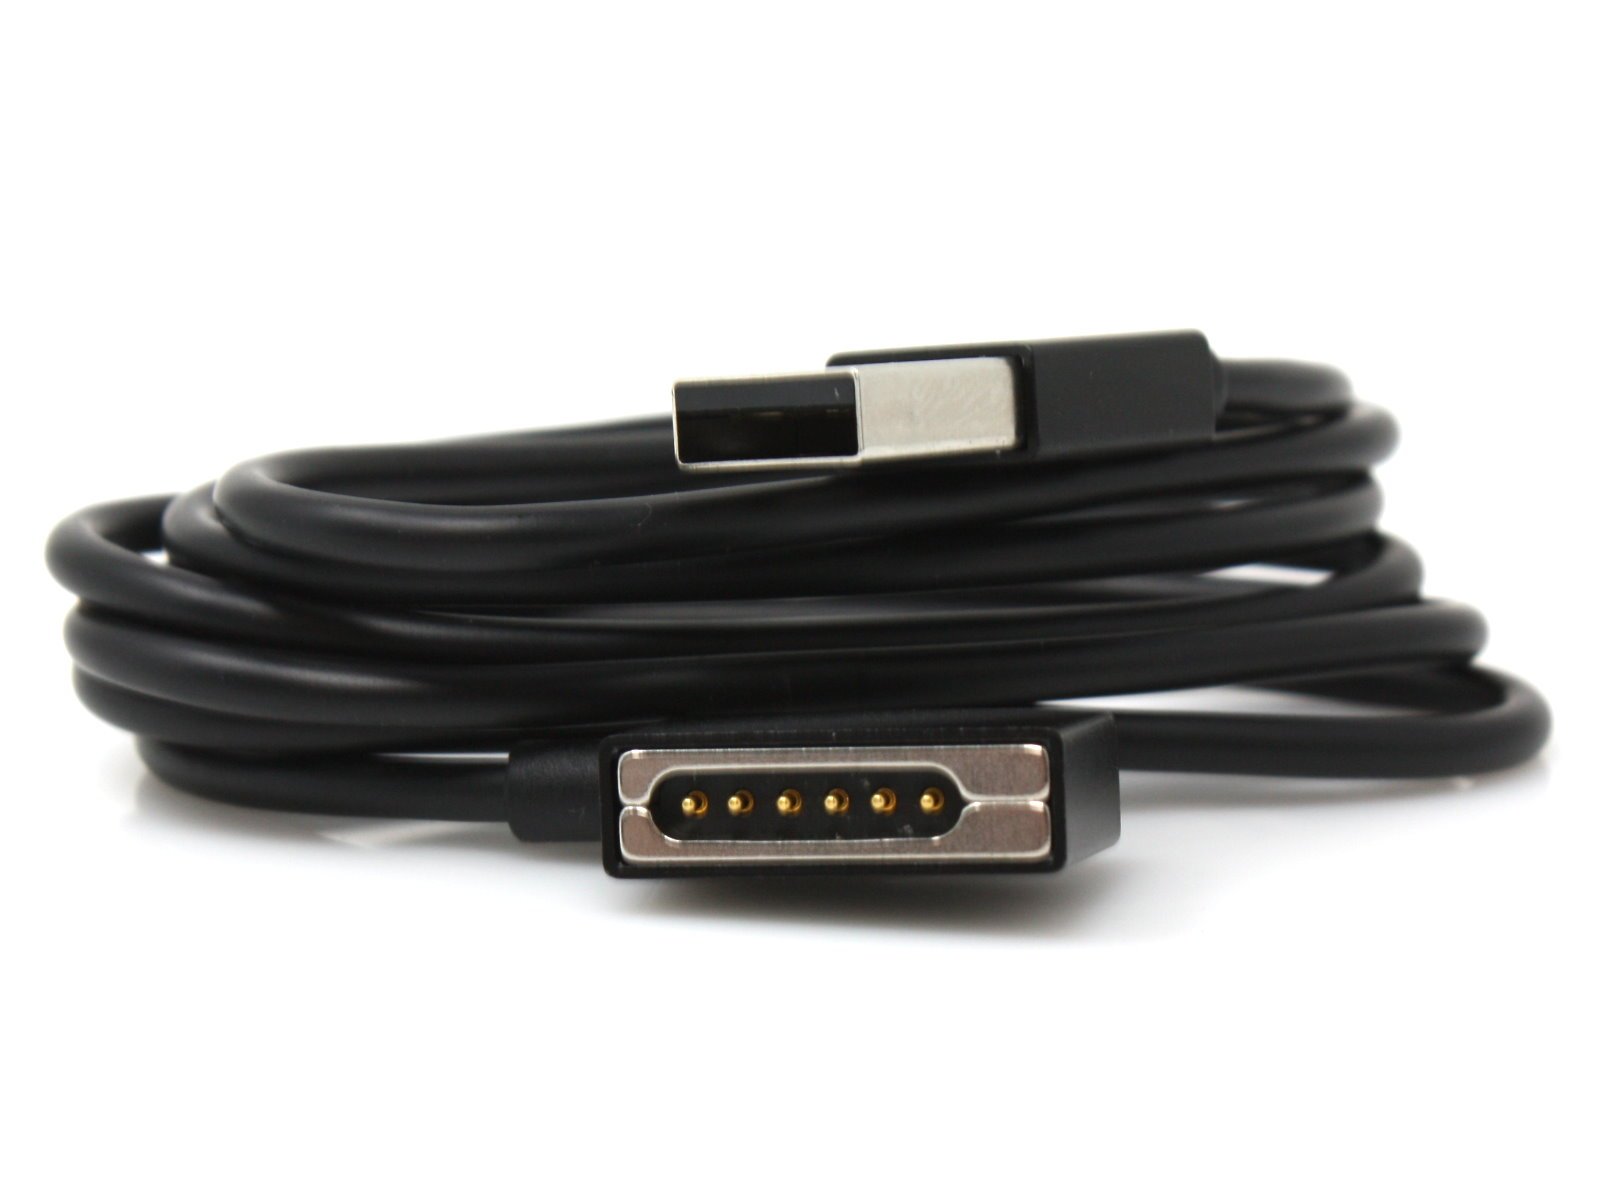 Oelmann LX7 USB Kabel mit Magnetstecker